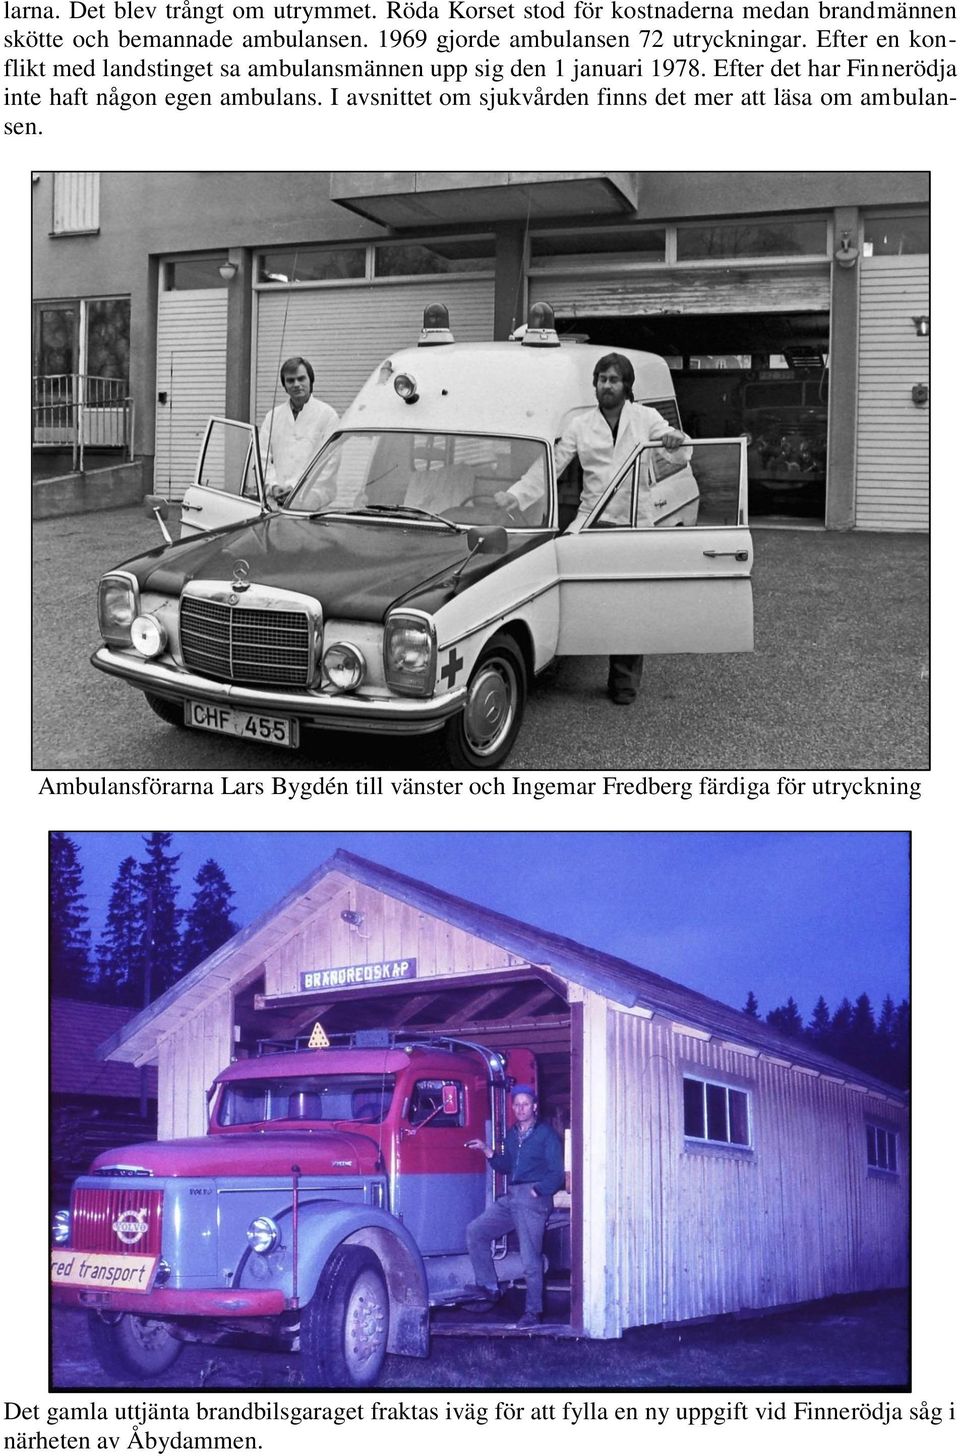 Efter det har Finnerödja inte haft någon egen ambulans. I avsnittet om sjukvården finns det mer att läsa om ambulansen.